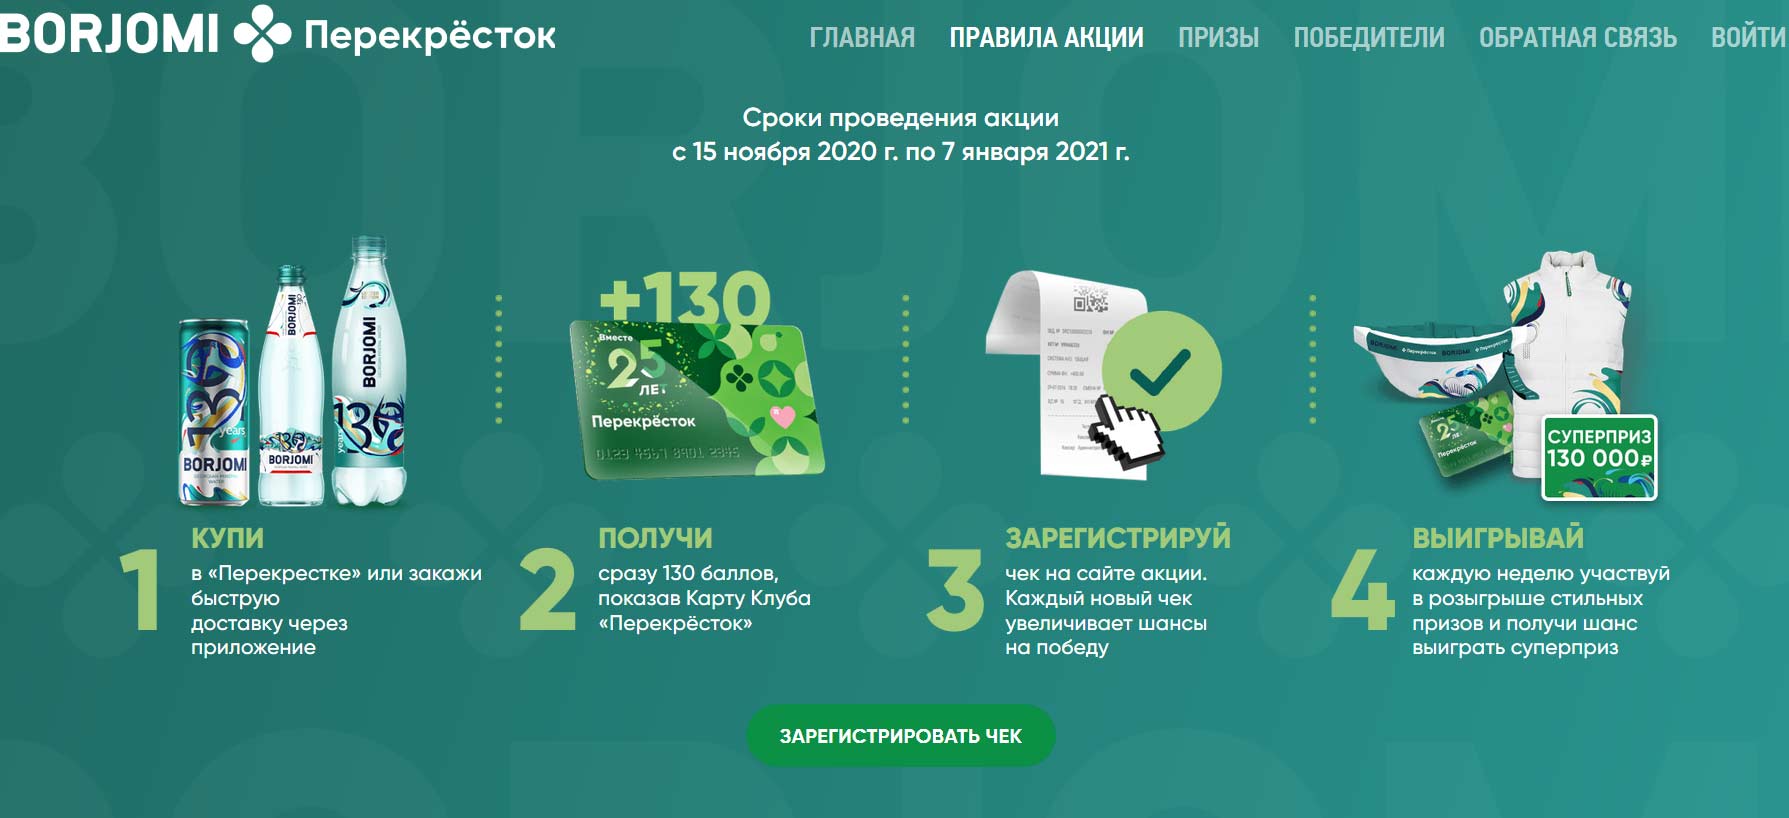 borjomi-perekrestok.ru как зарегистрировать чек